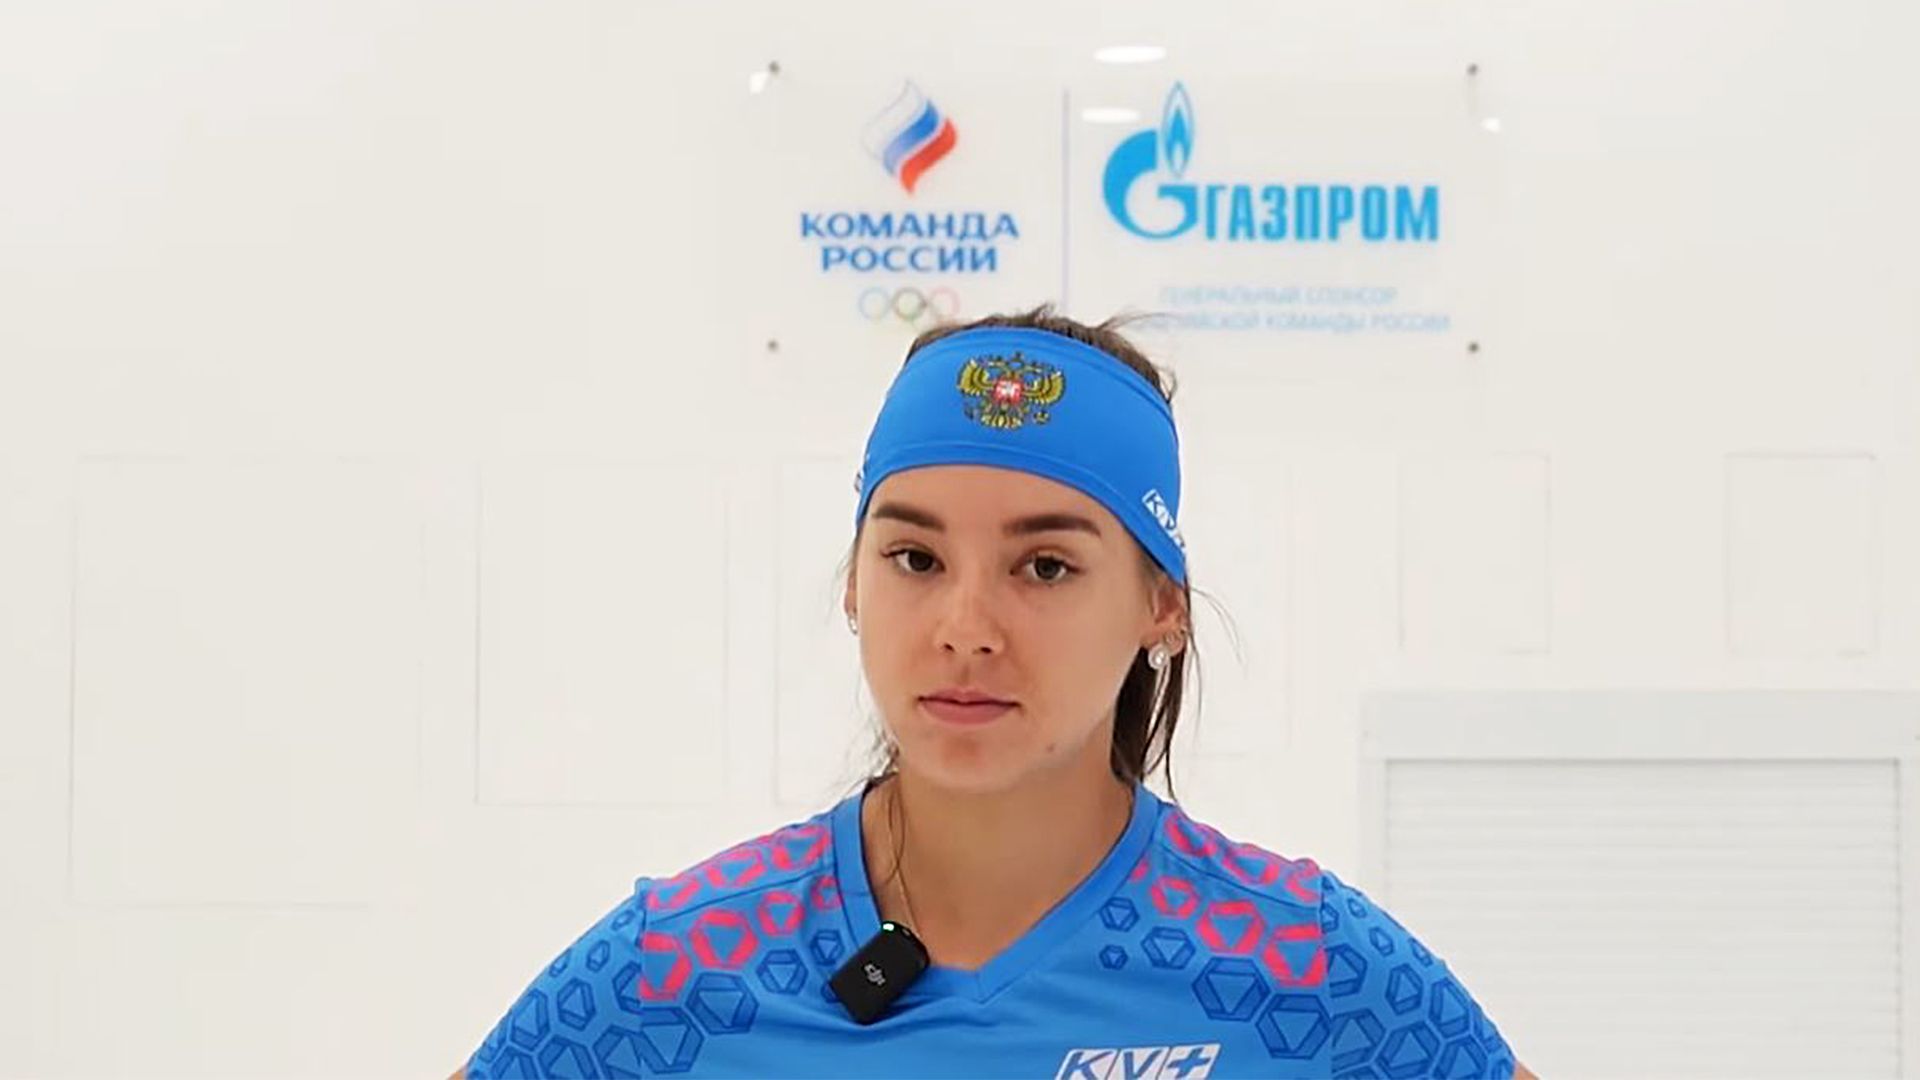 Гореева стала победительницей общего зачета Кубка России по биатлону, Сливко выиграла в зачете масс-стартов